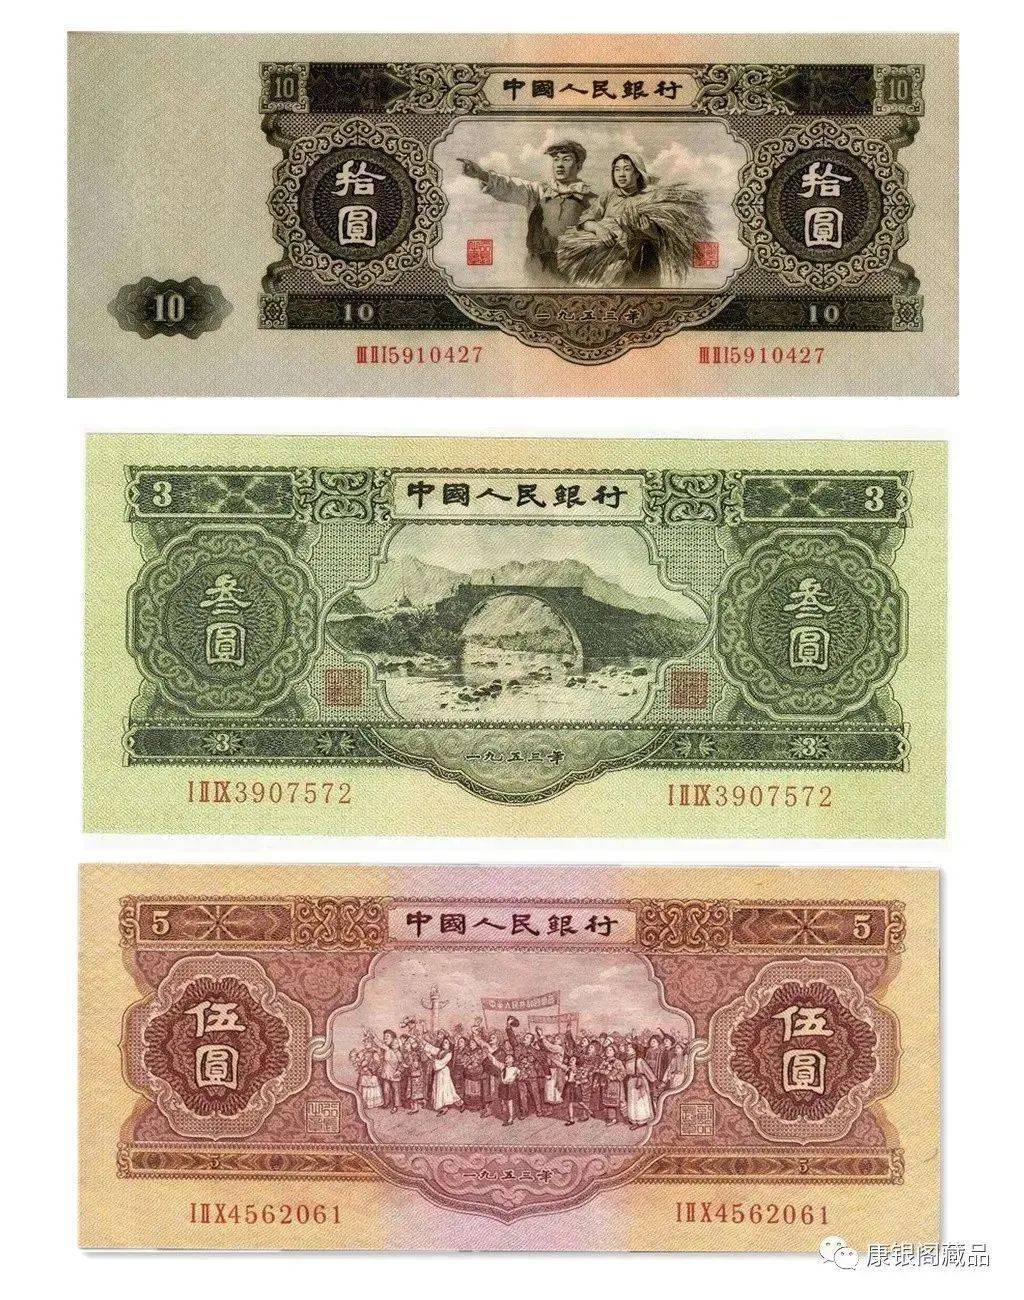 何为苏三币 苏三币是指第二套人民币中1953年版的叁元,伍元(红面)